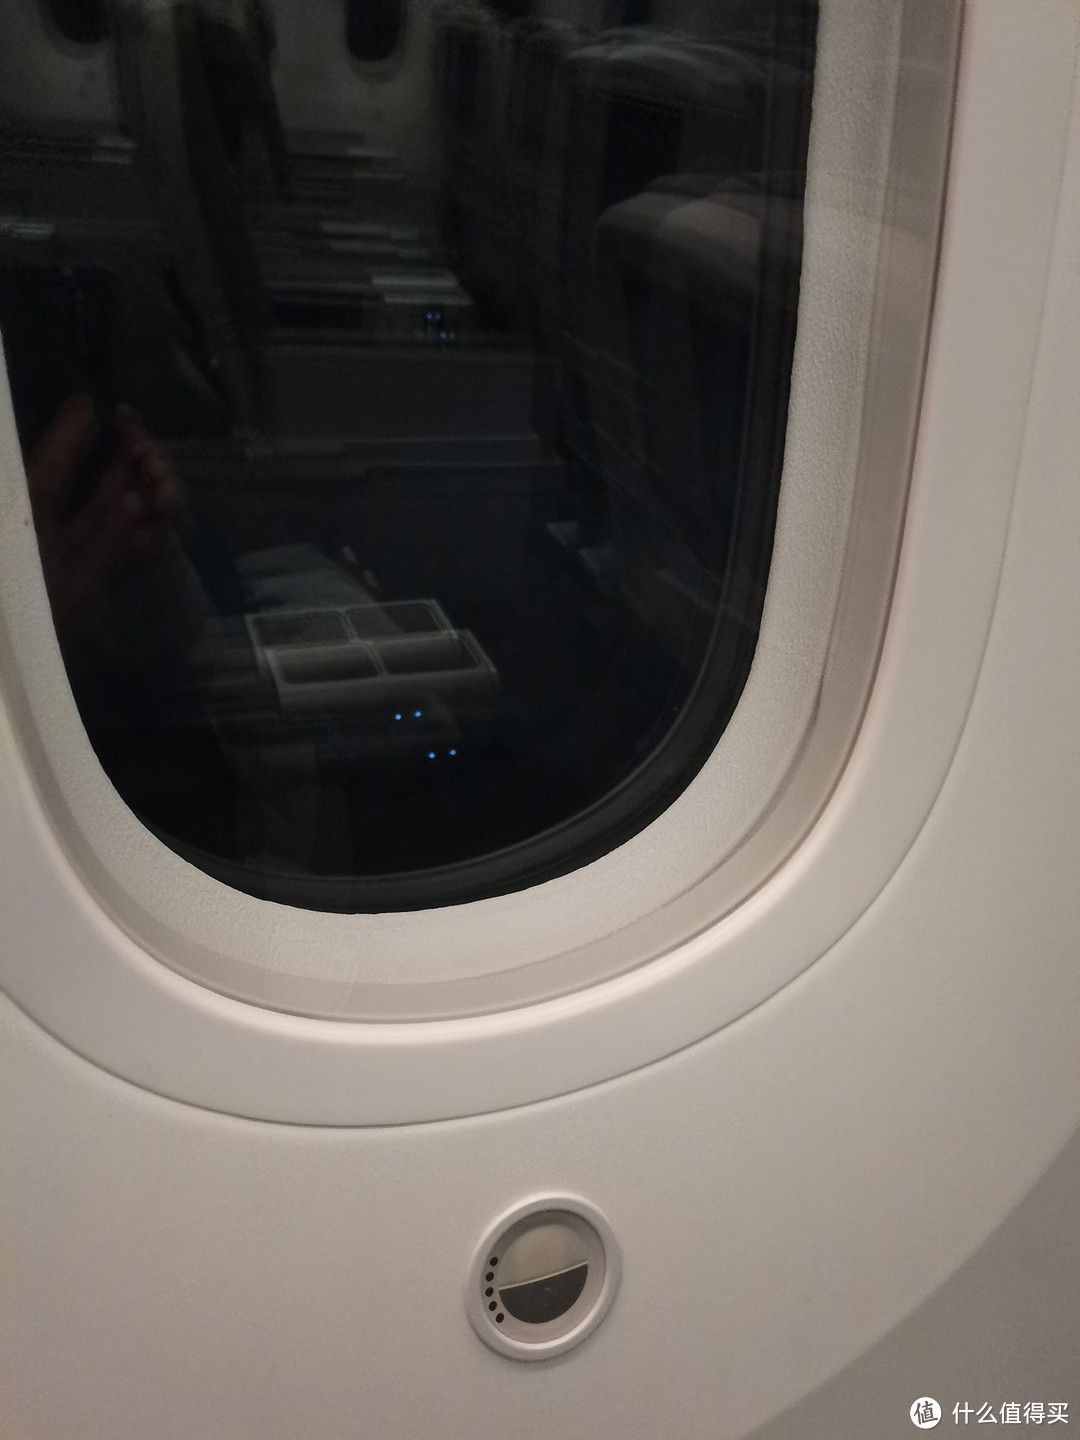 想不大东航的超经这么霸气--打卡东航787超级经济舱